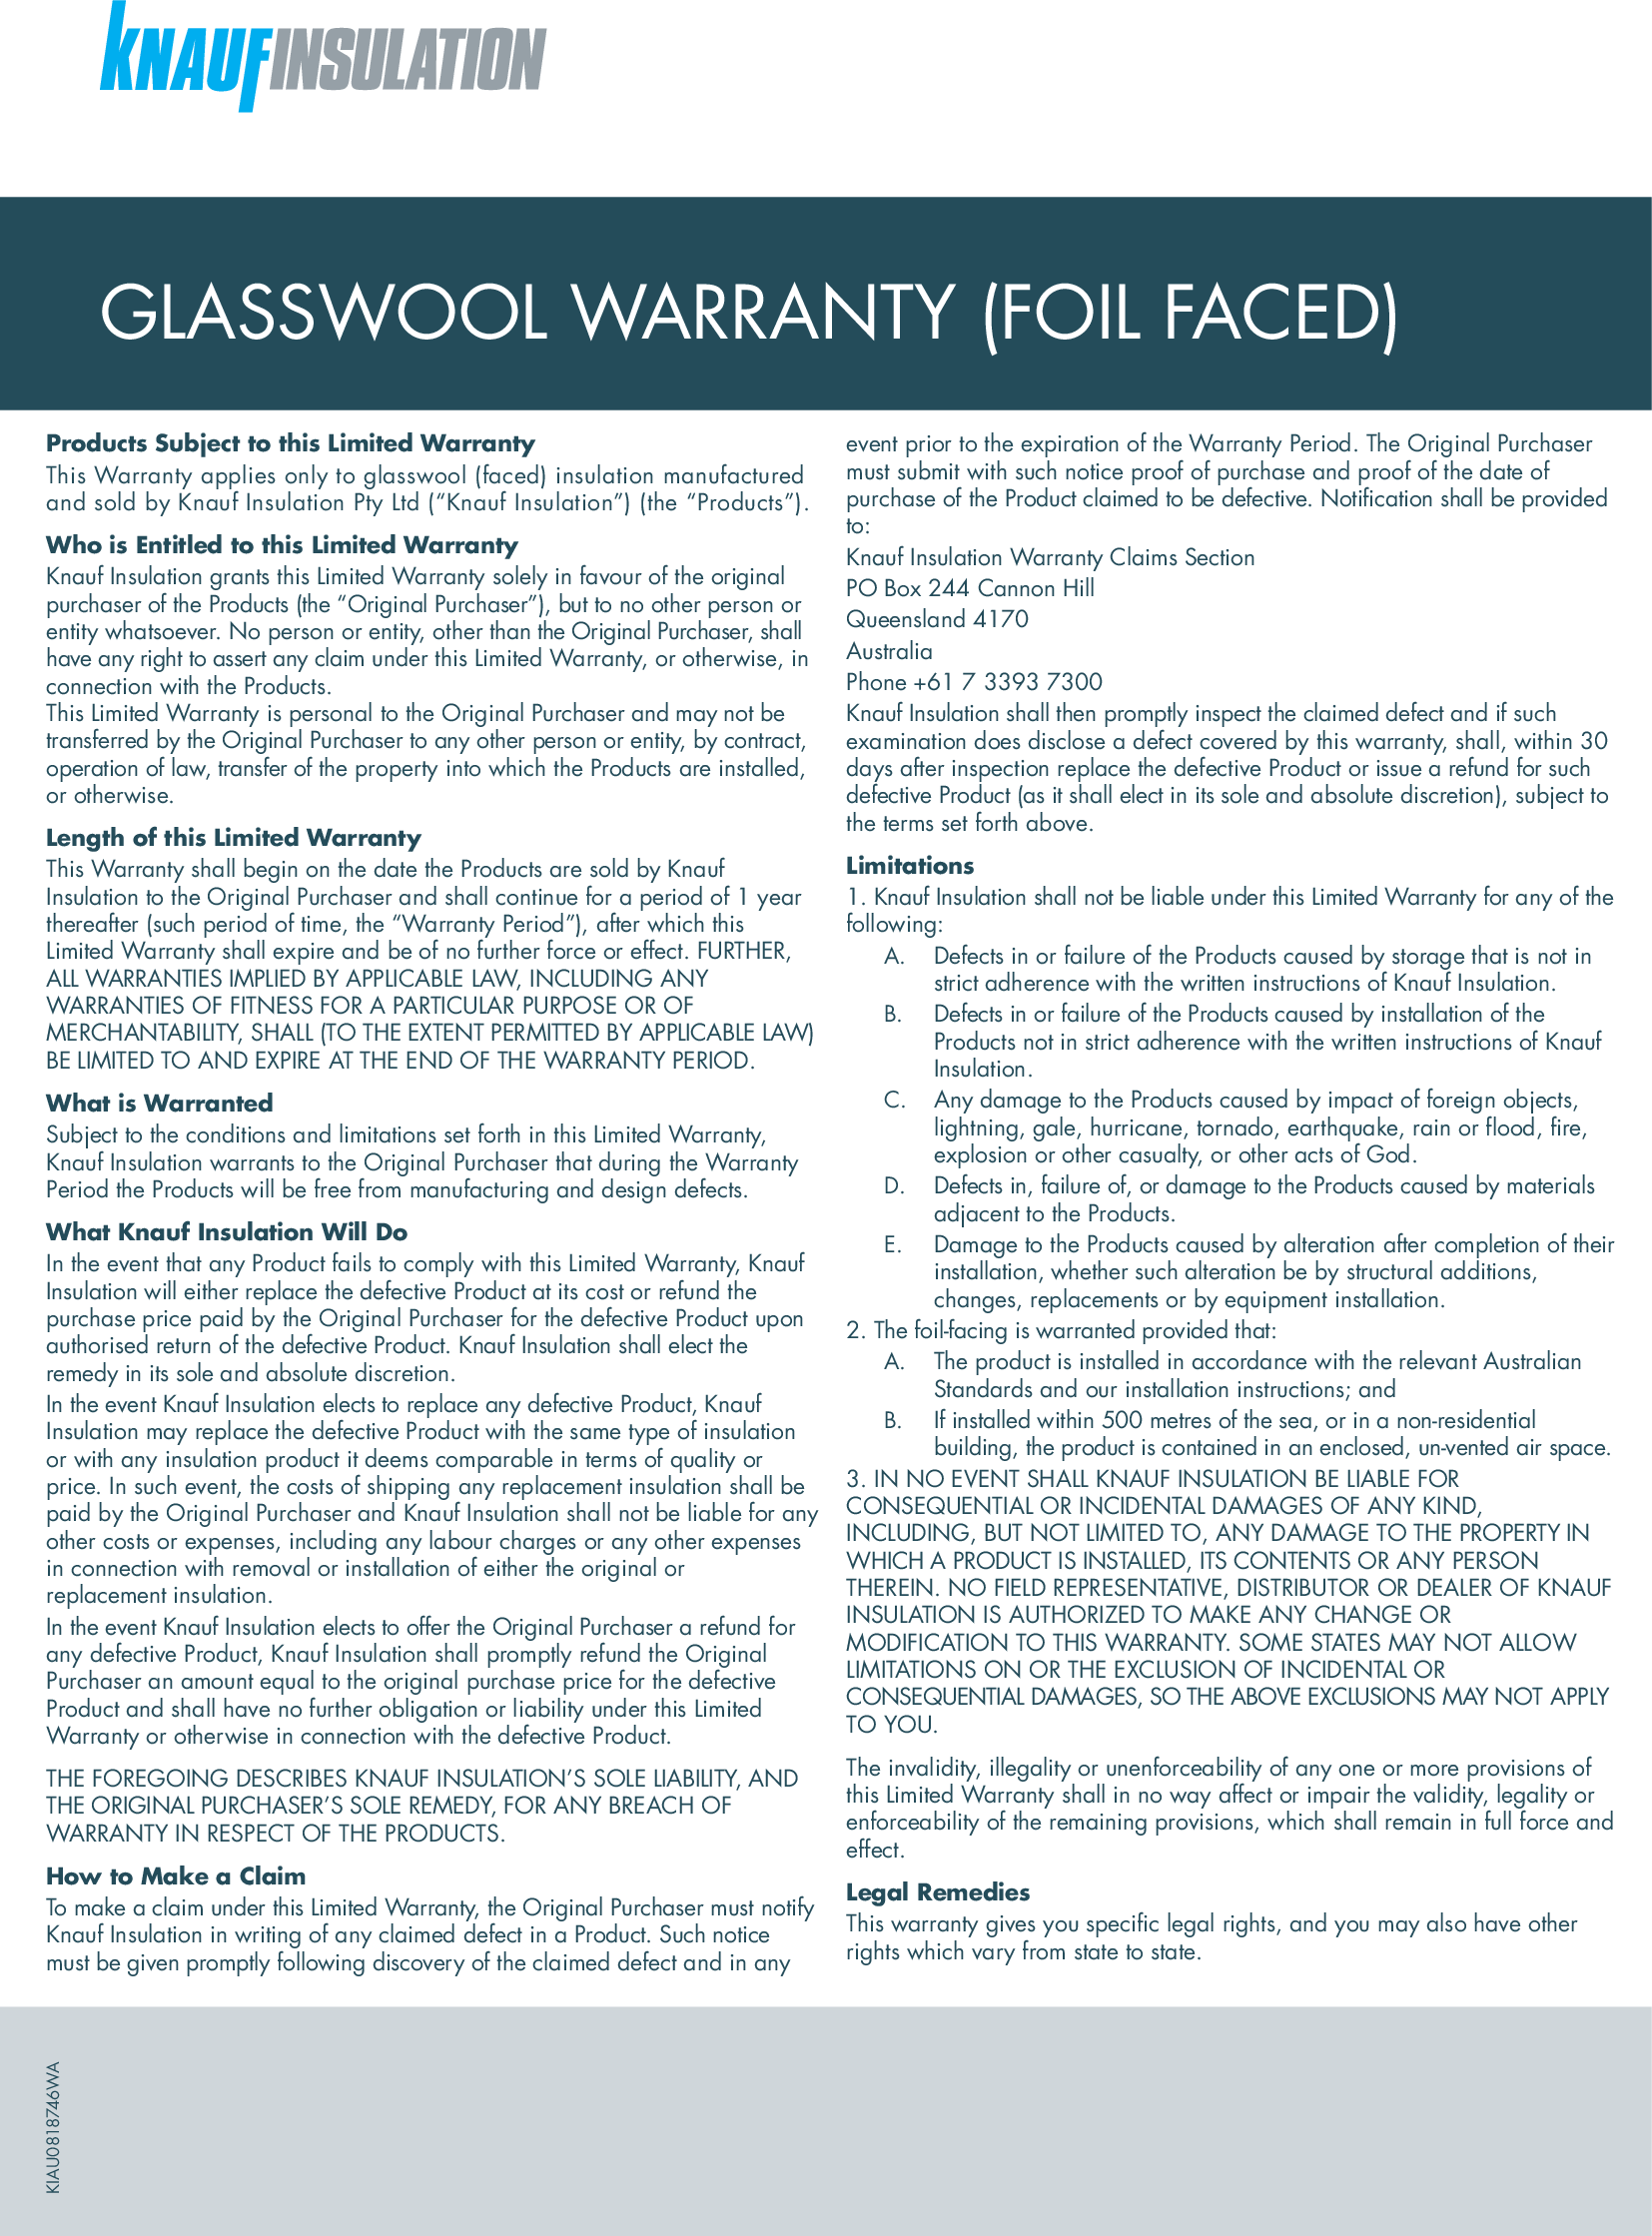 Foil Faced Glasswool warranty